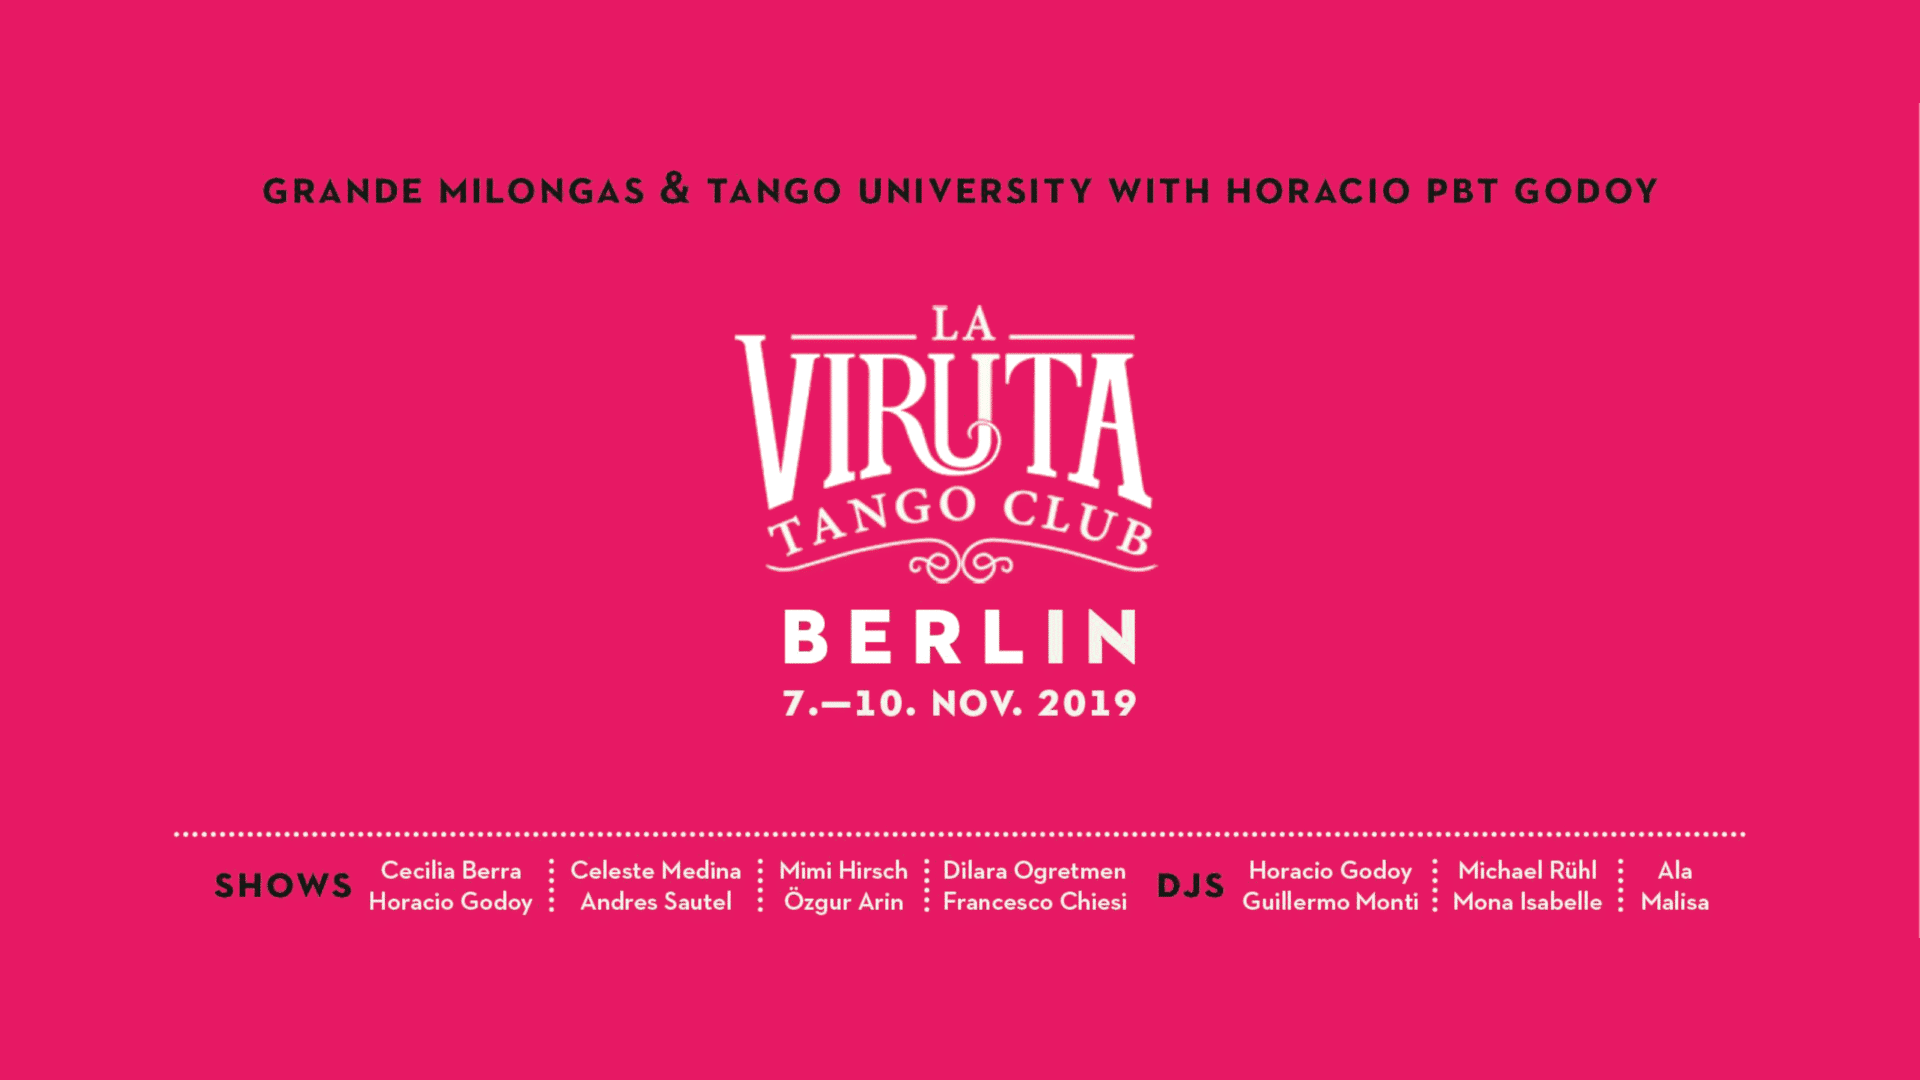 La Viruta Tango Club Berlin 2019 Preview Image